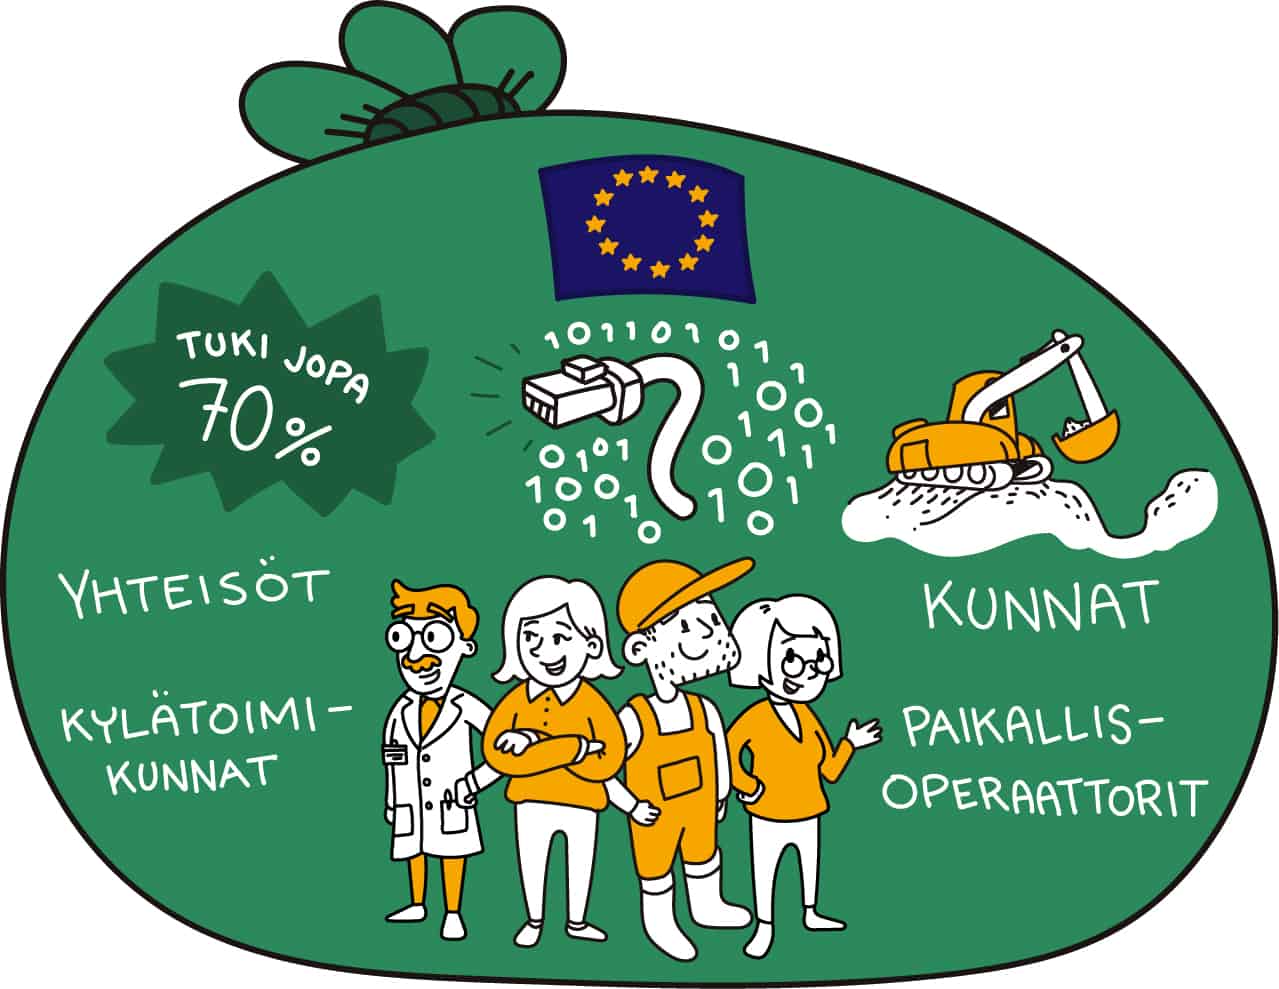 Kuvituskuva, jossa vihreässä säkissä ihmisiä, EU:n lippu, verkkopiuha ja kaivinkone.